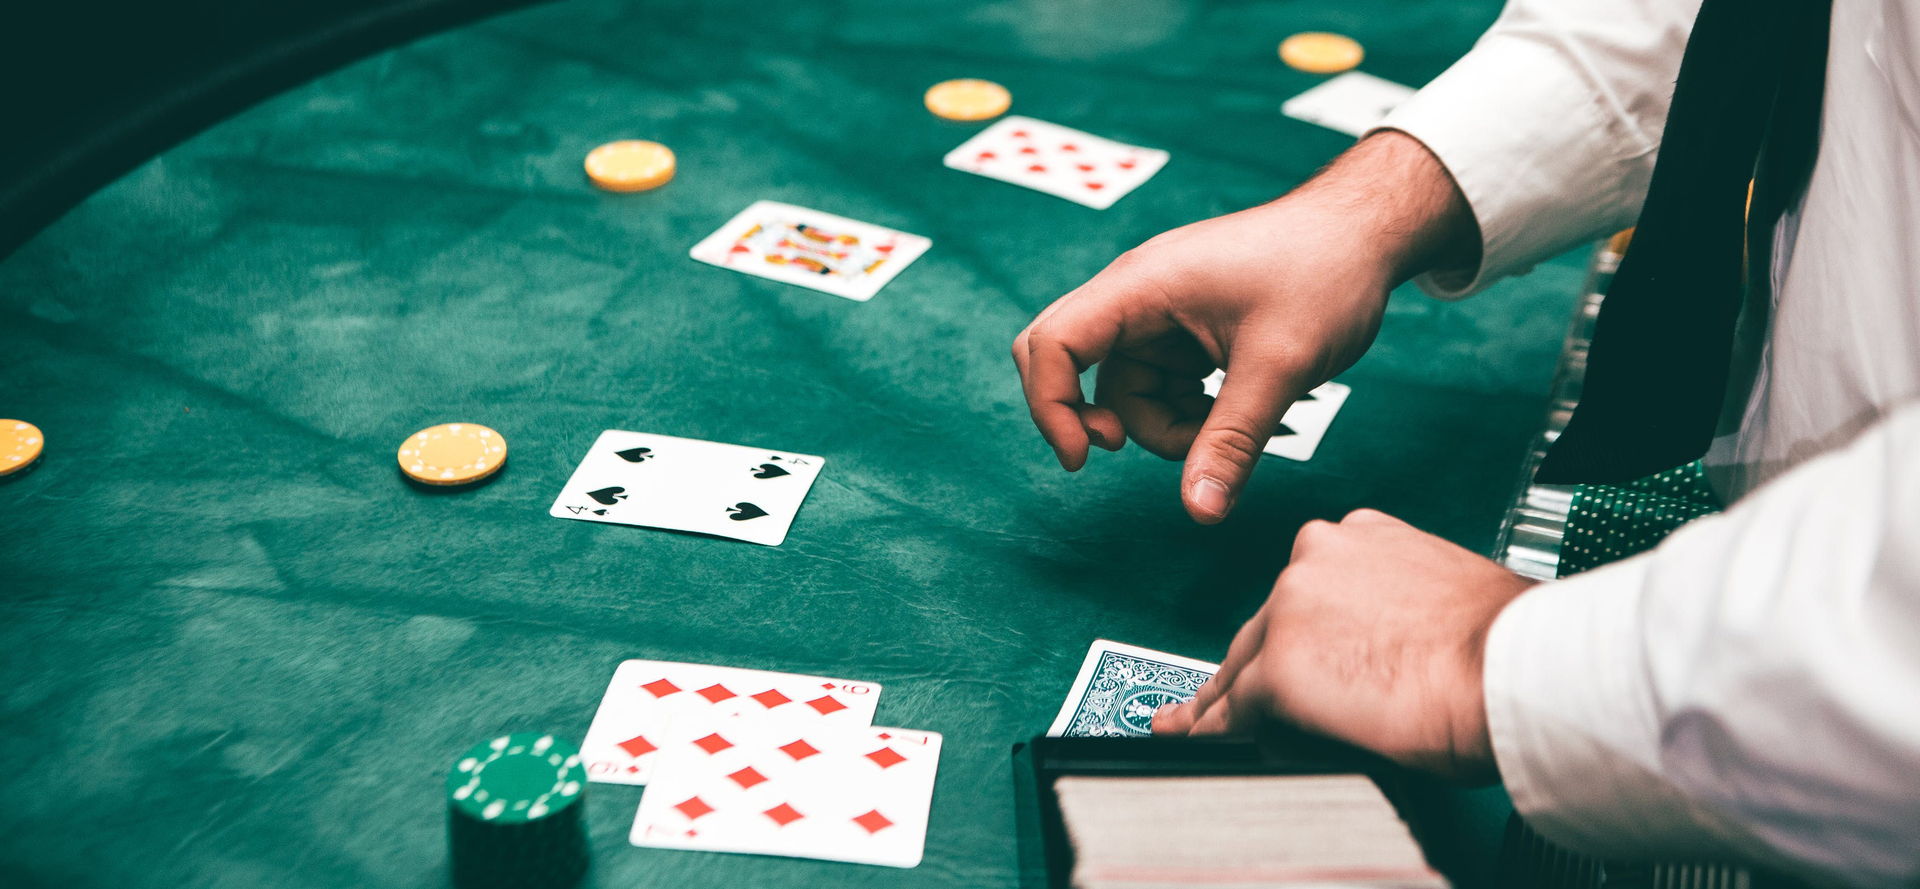 игра в техасский покер против дилера в казино